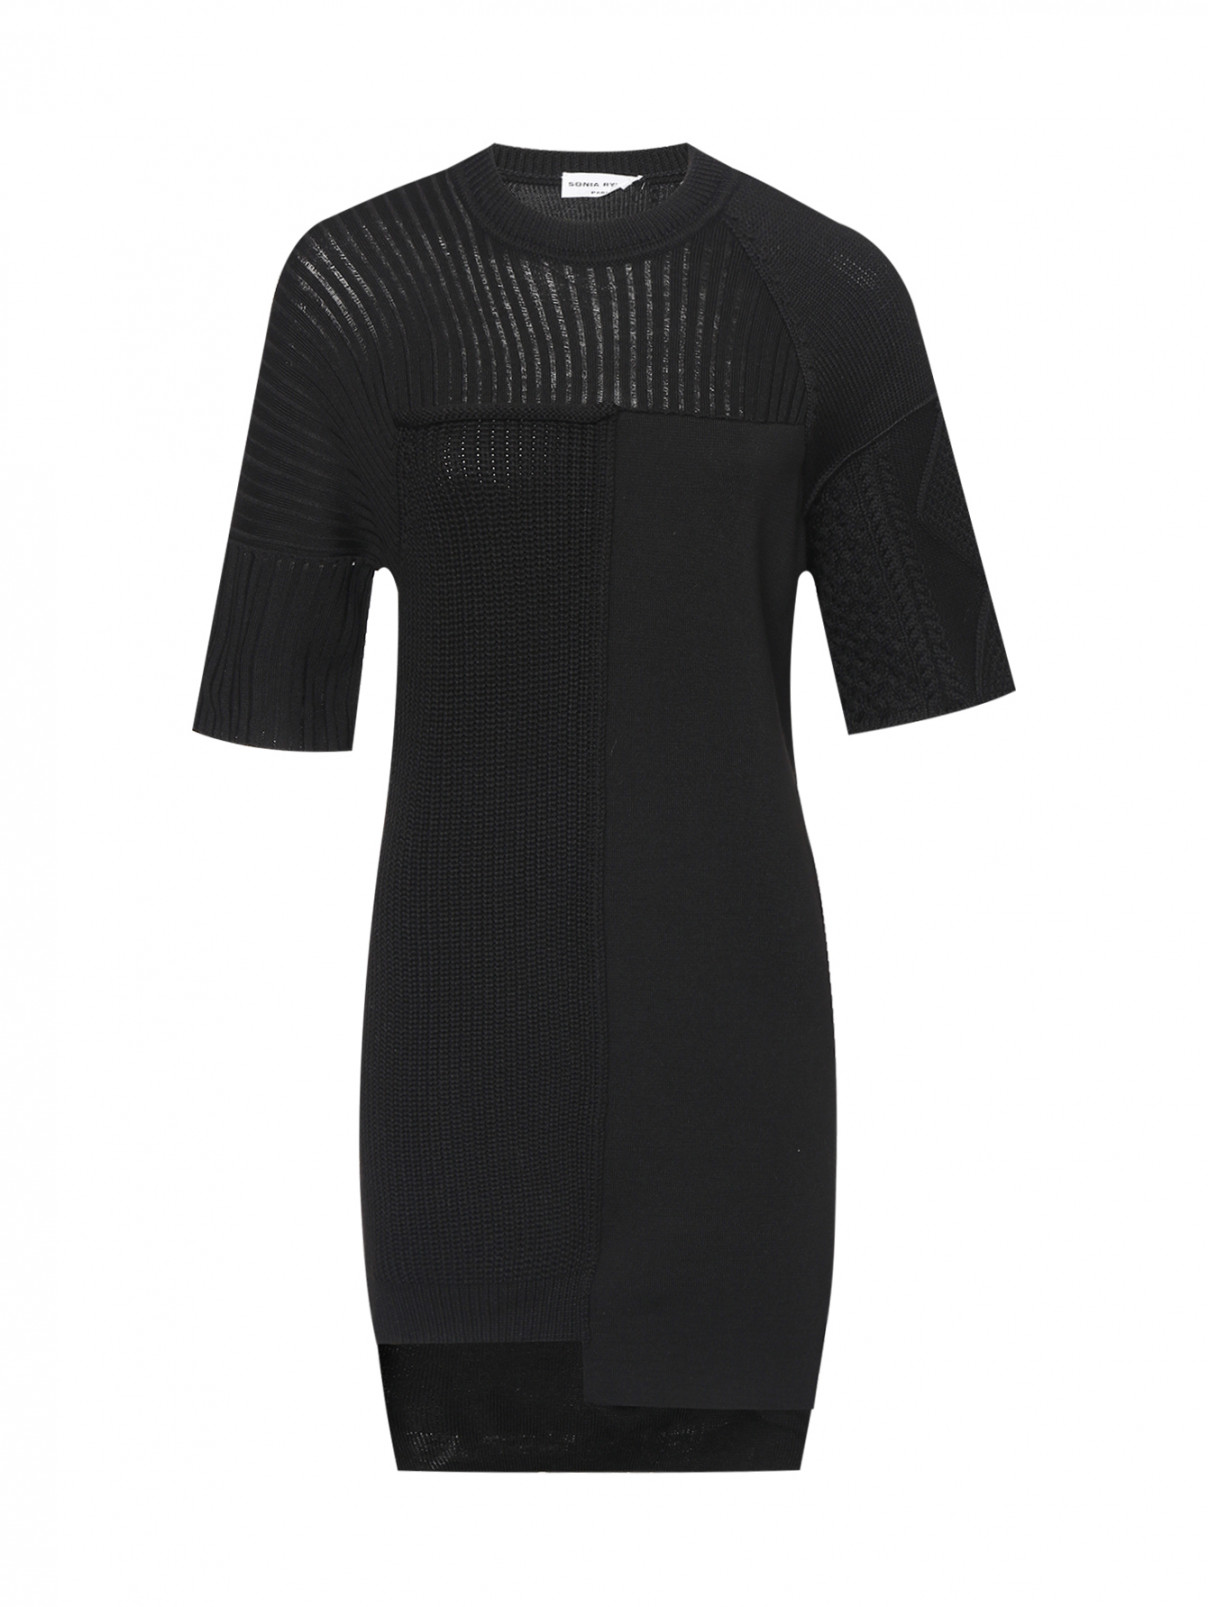 Трикотажное платье из шерсти Sonia Rykiel  –  Общий вид  – Цвет:  Черный